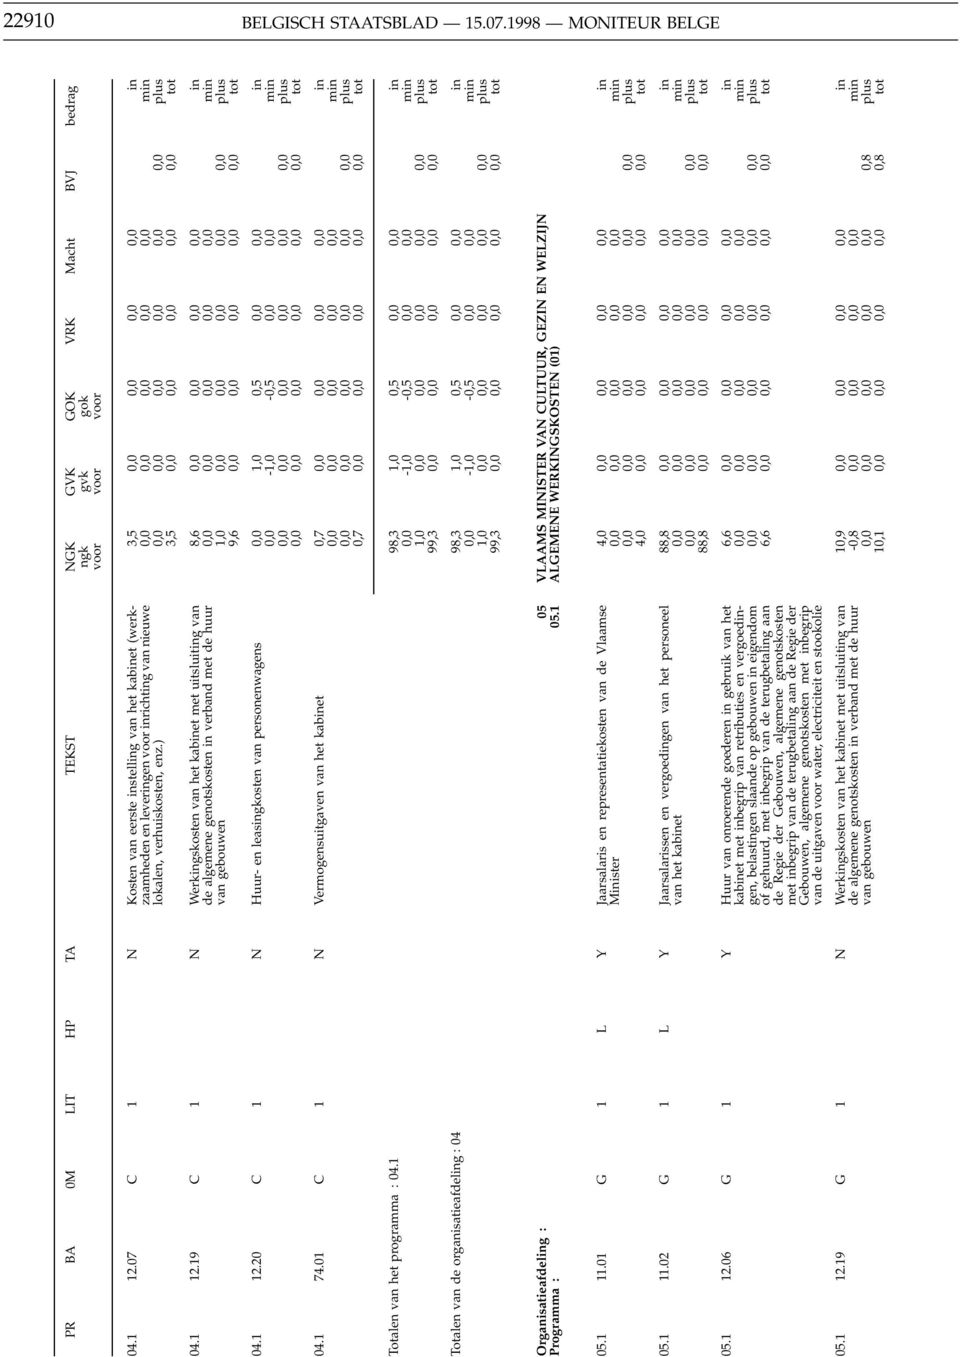 19 C 1 N Werkgskosten van het kabet met uitsluitg van de algemene genotskosten verband met de huur van gebouwen 8,6 1,0 9,6 m 04.1 12.